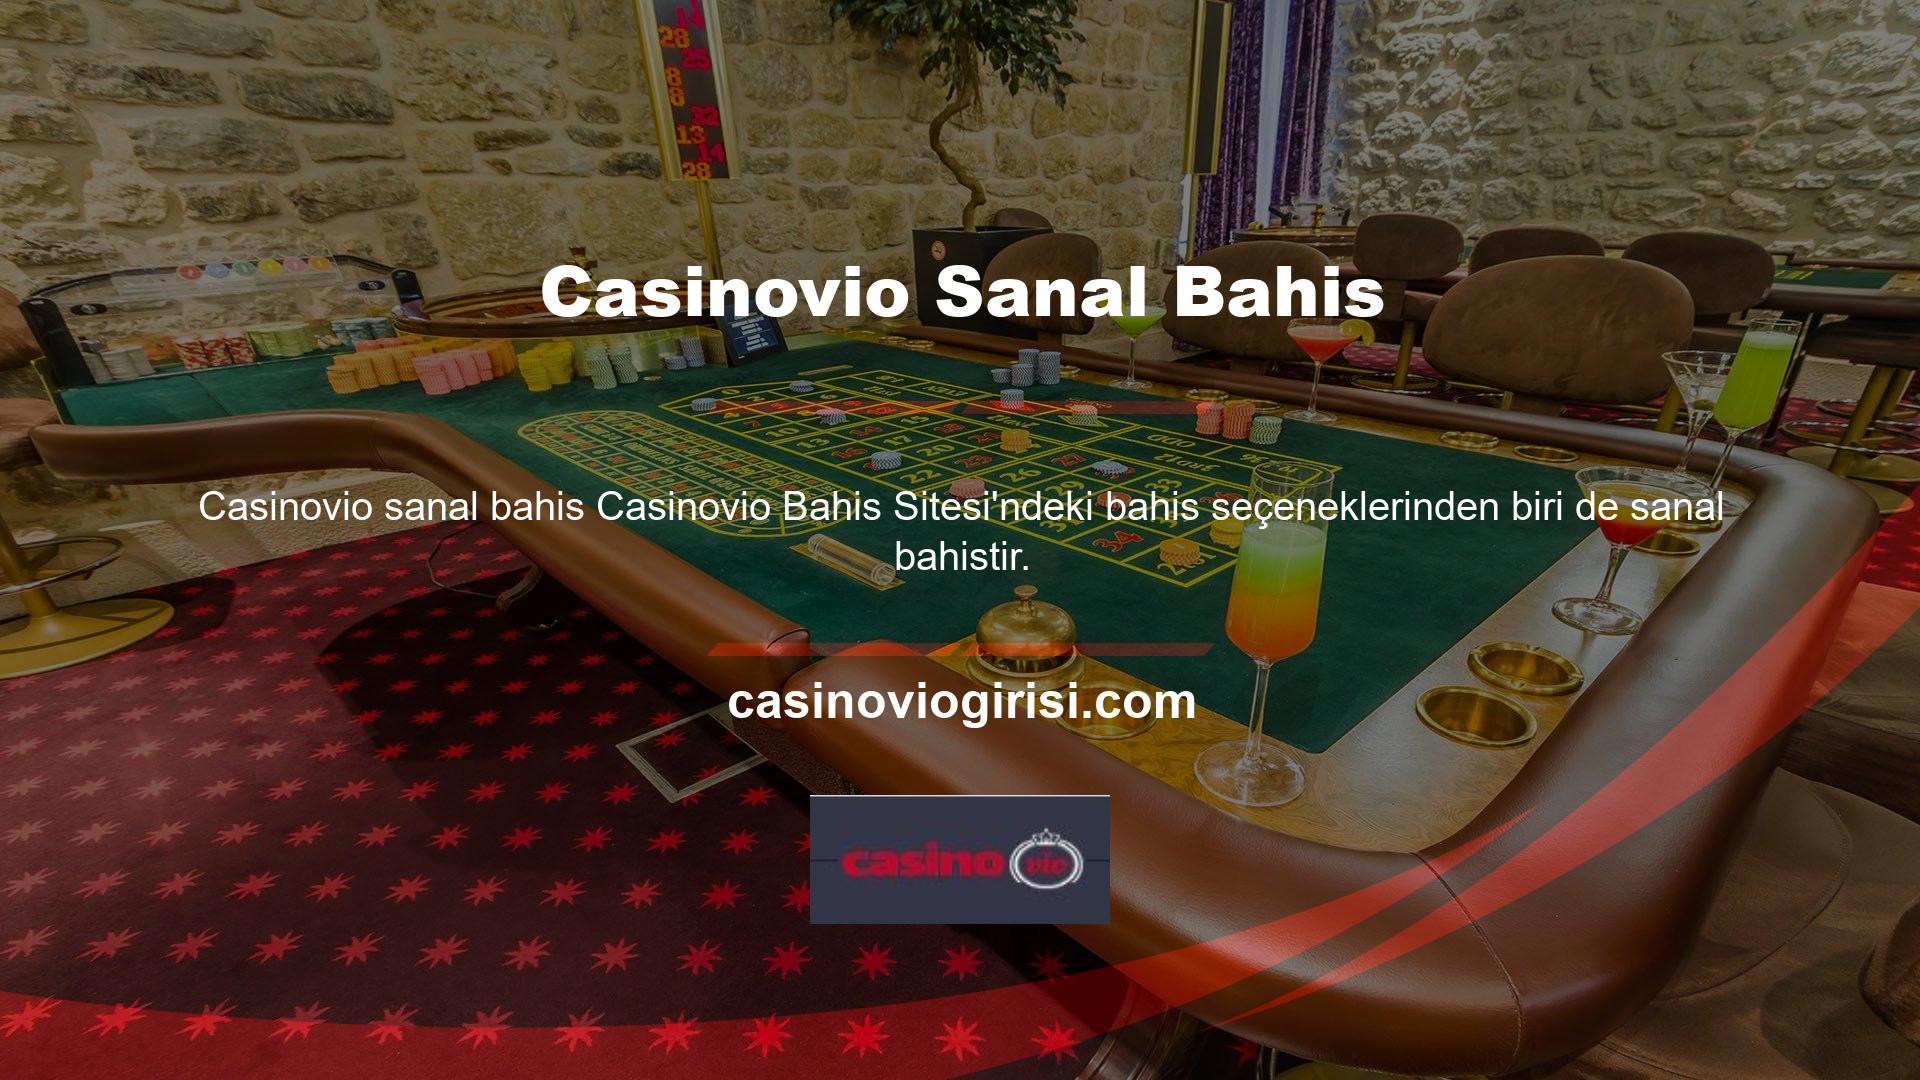 Casinovio, oyunculara 8 sanal bahis türü sunar